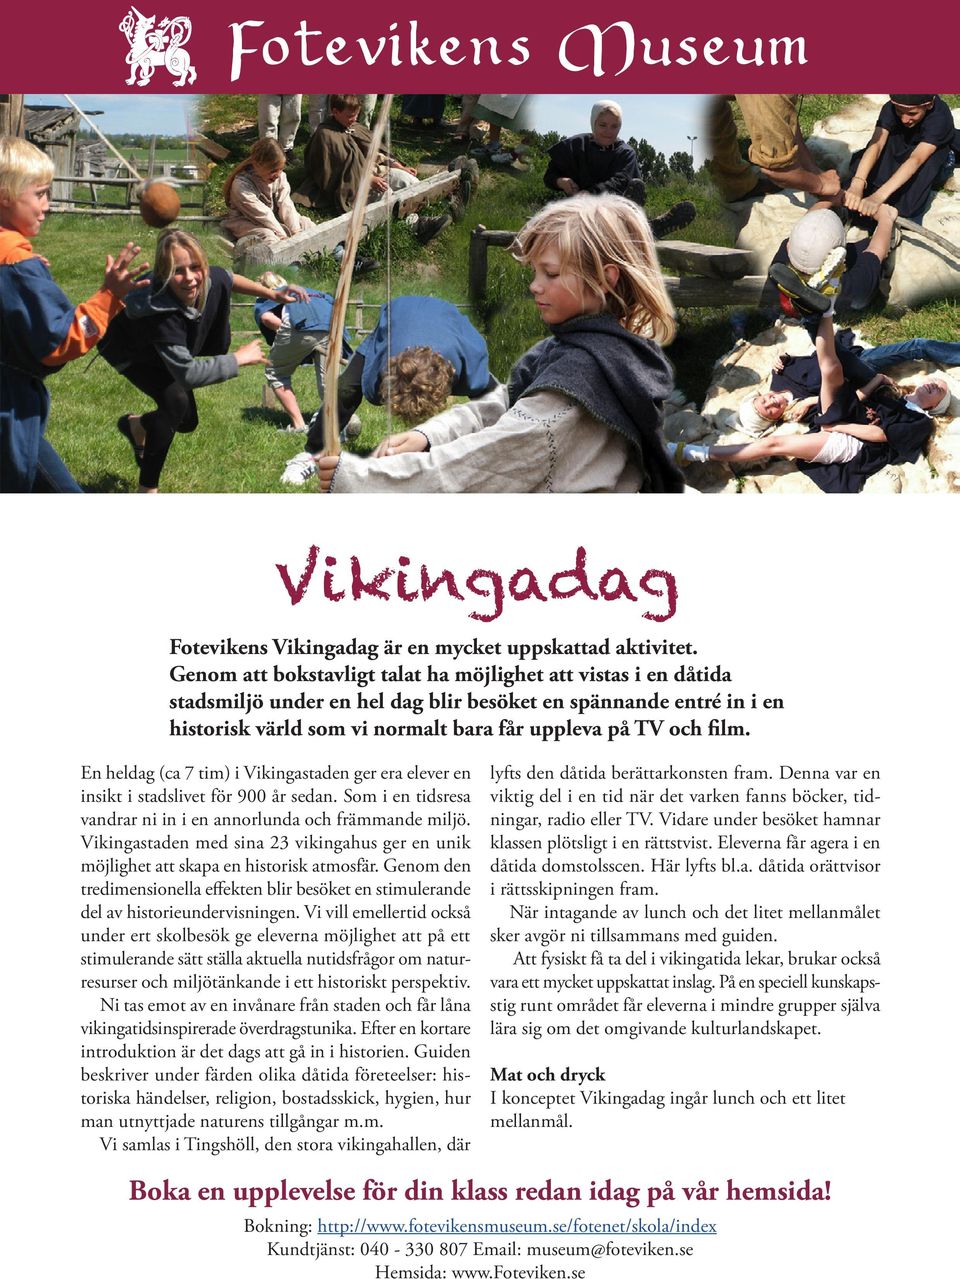 En heldag (ca 7 tim) i Vikingastaden ger era elever en insikt i stadslivet för 900 år sedan. Som i en tids resa vandrar ni in i en annorlunda och främmande miljö.